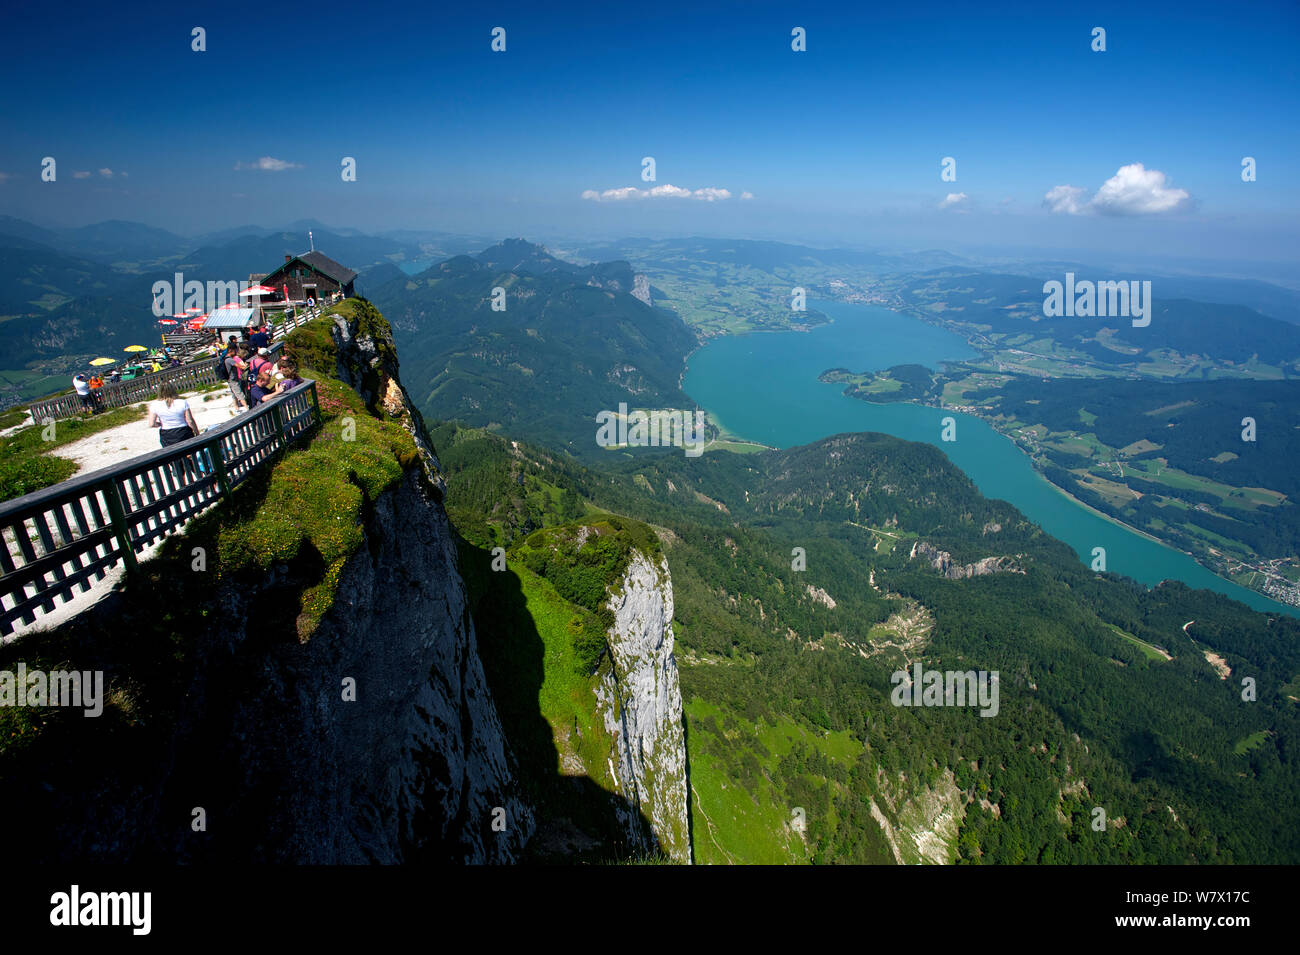 Lago Mondsee visto dalla cima del monte Shafberg con strutture turistiche durante l'estate. Austria, luglio 2013. Foto Stock